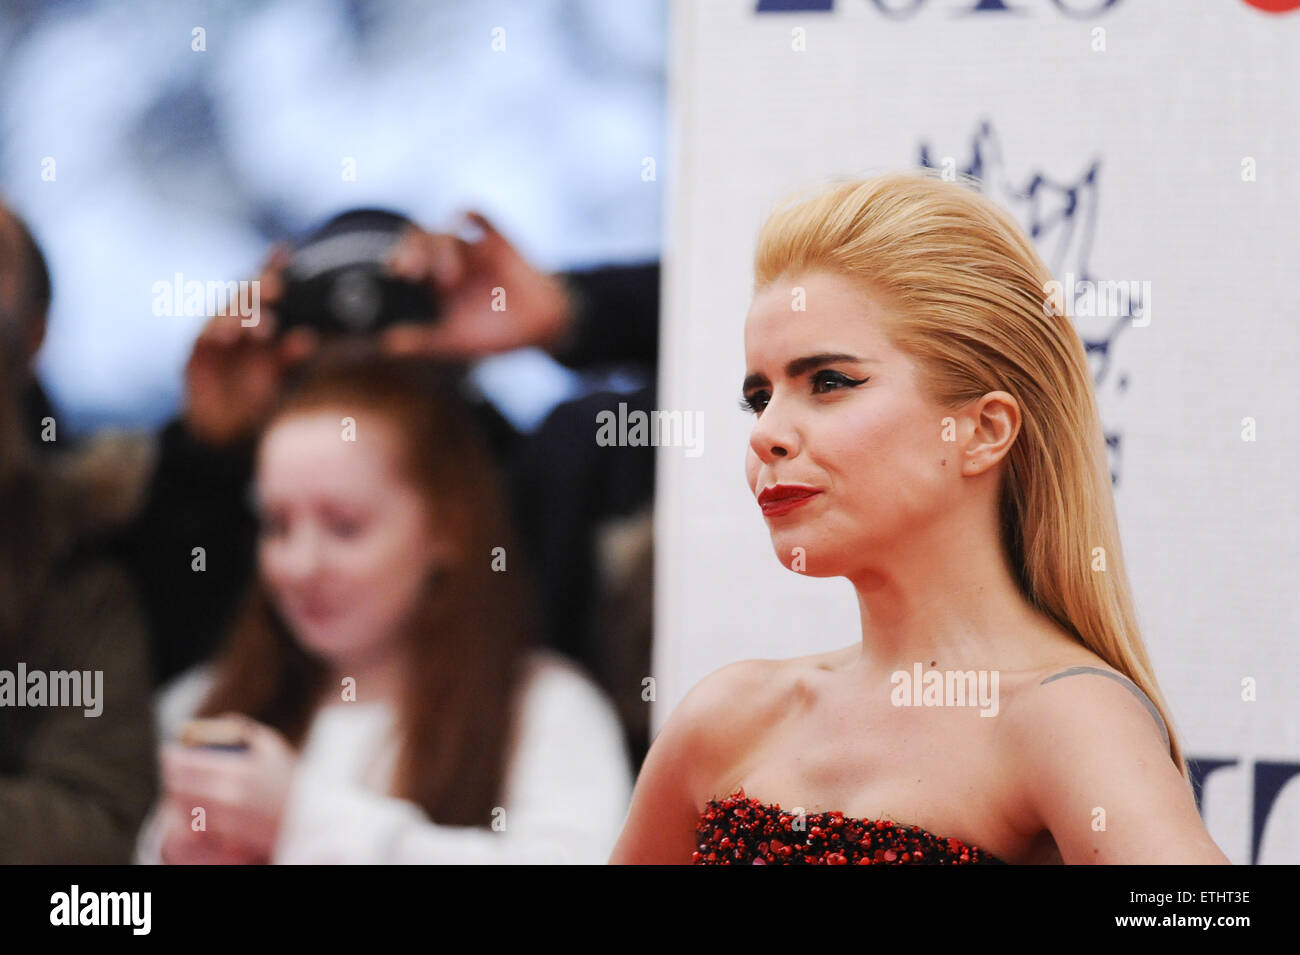 Les BRIT Awards 2015 qui a eu lieu à l'O2 - Tapis rouge avec des arrivées : Paloma Faith Où : London, Royaume-Uni Quand : 25 Mar 2015 Crédit : Euan Cherry/WENN.com Banque D'Images